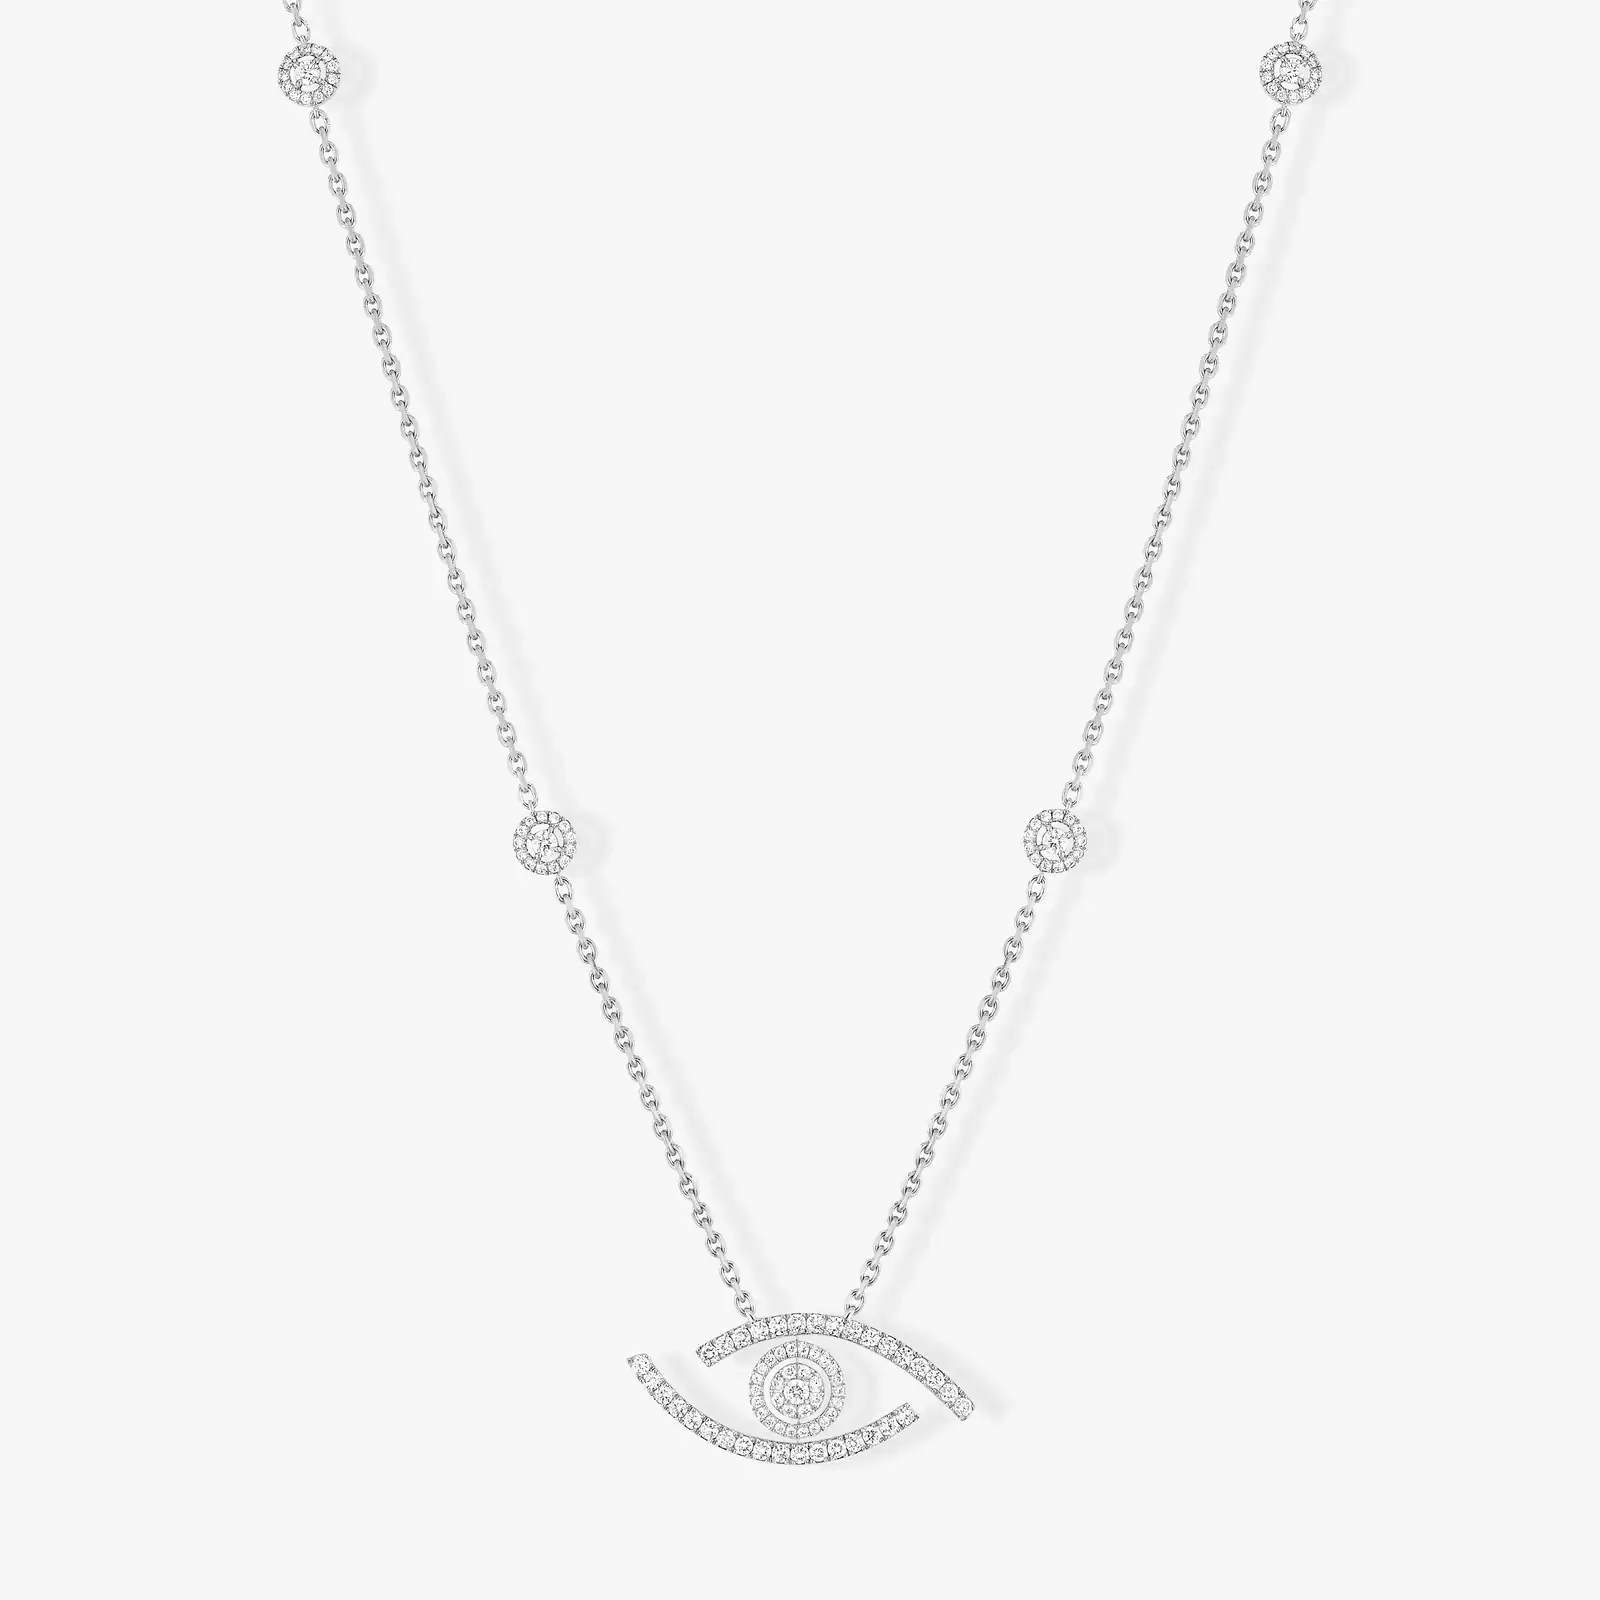 Collier Femme Or Blanc Diamant Sautoir Lucky Eye Pavé 11570-WG